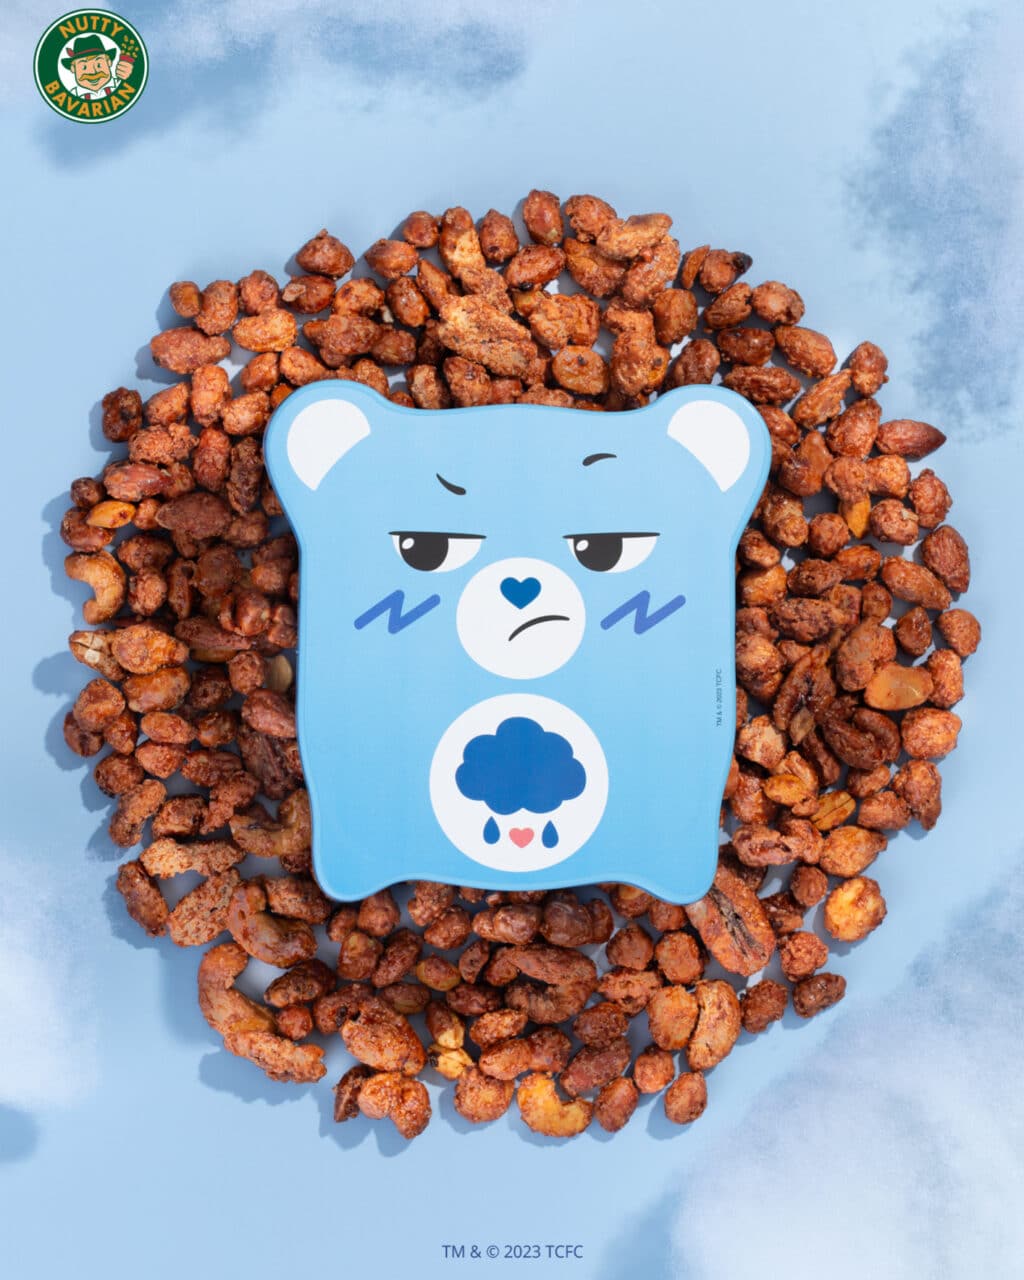 Nutty Bavarian traz embalagens e lunchbox dos Ursinhos Carinhosos